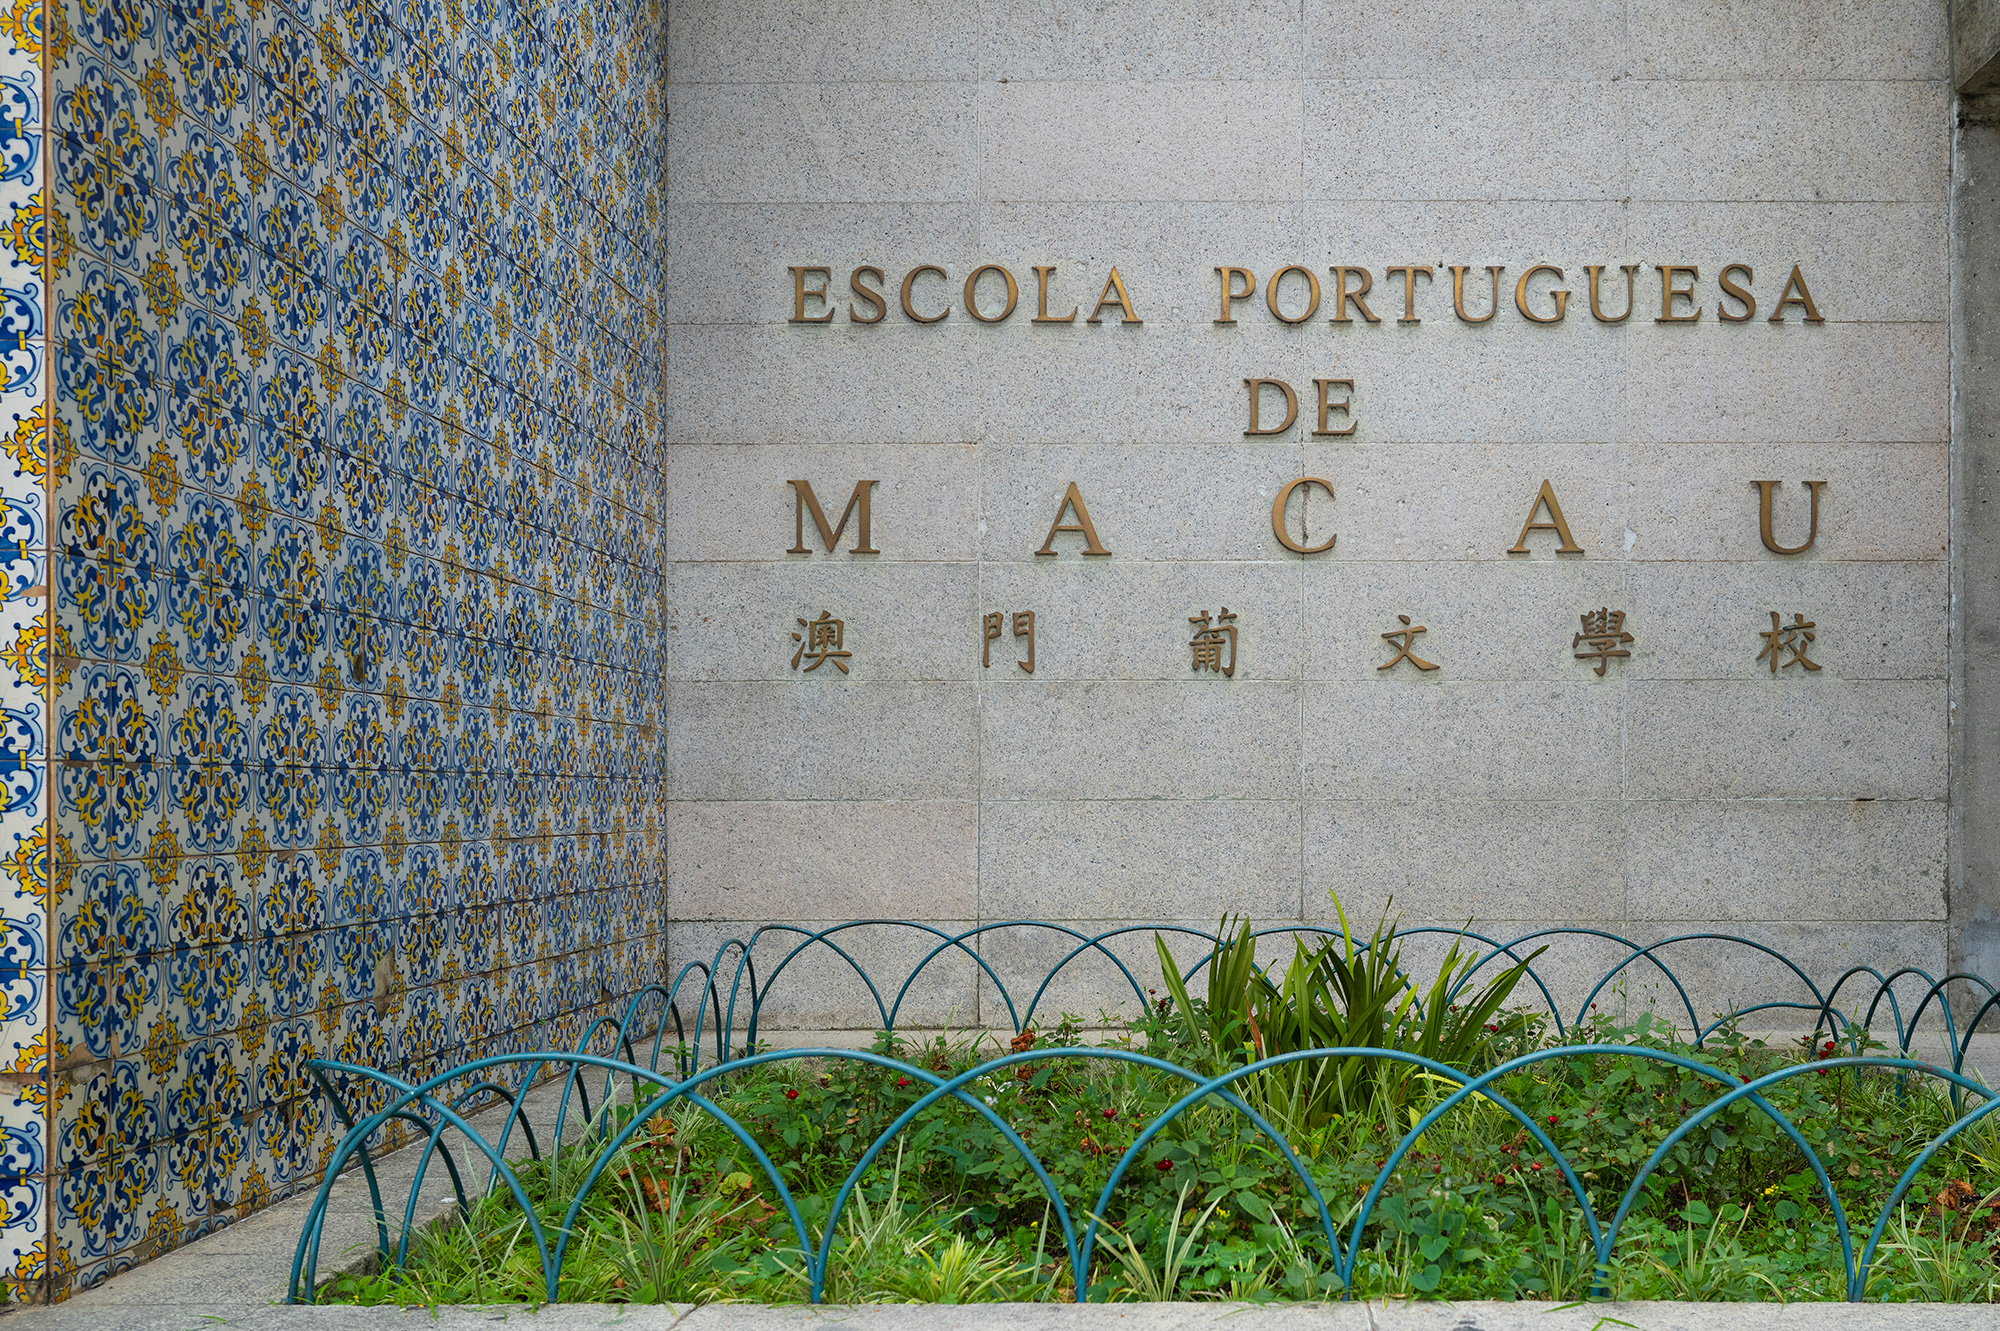 Escola Portuguesa de Macau, Portuguese school